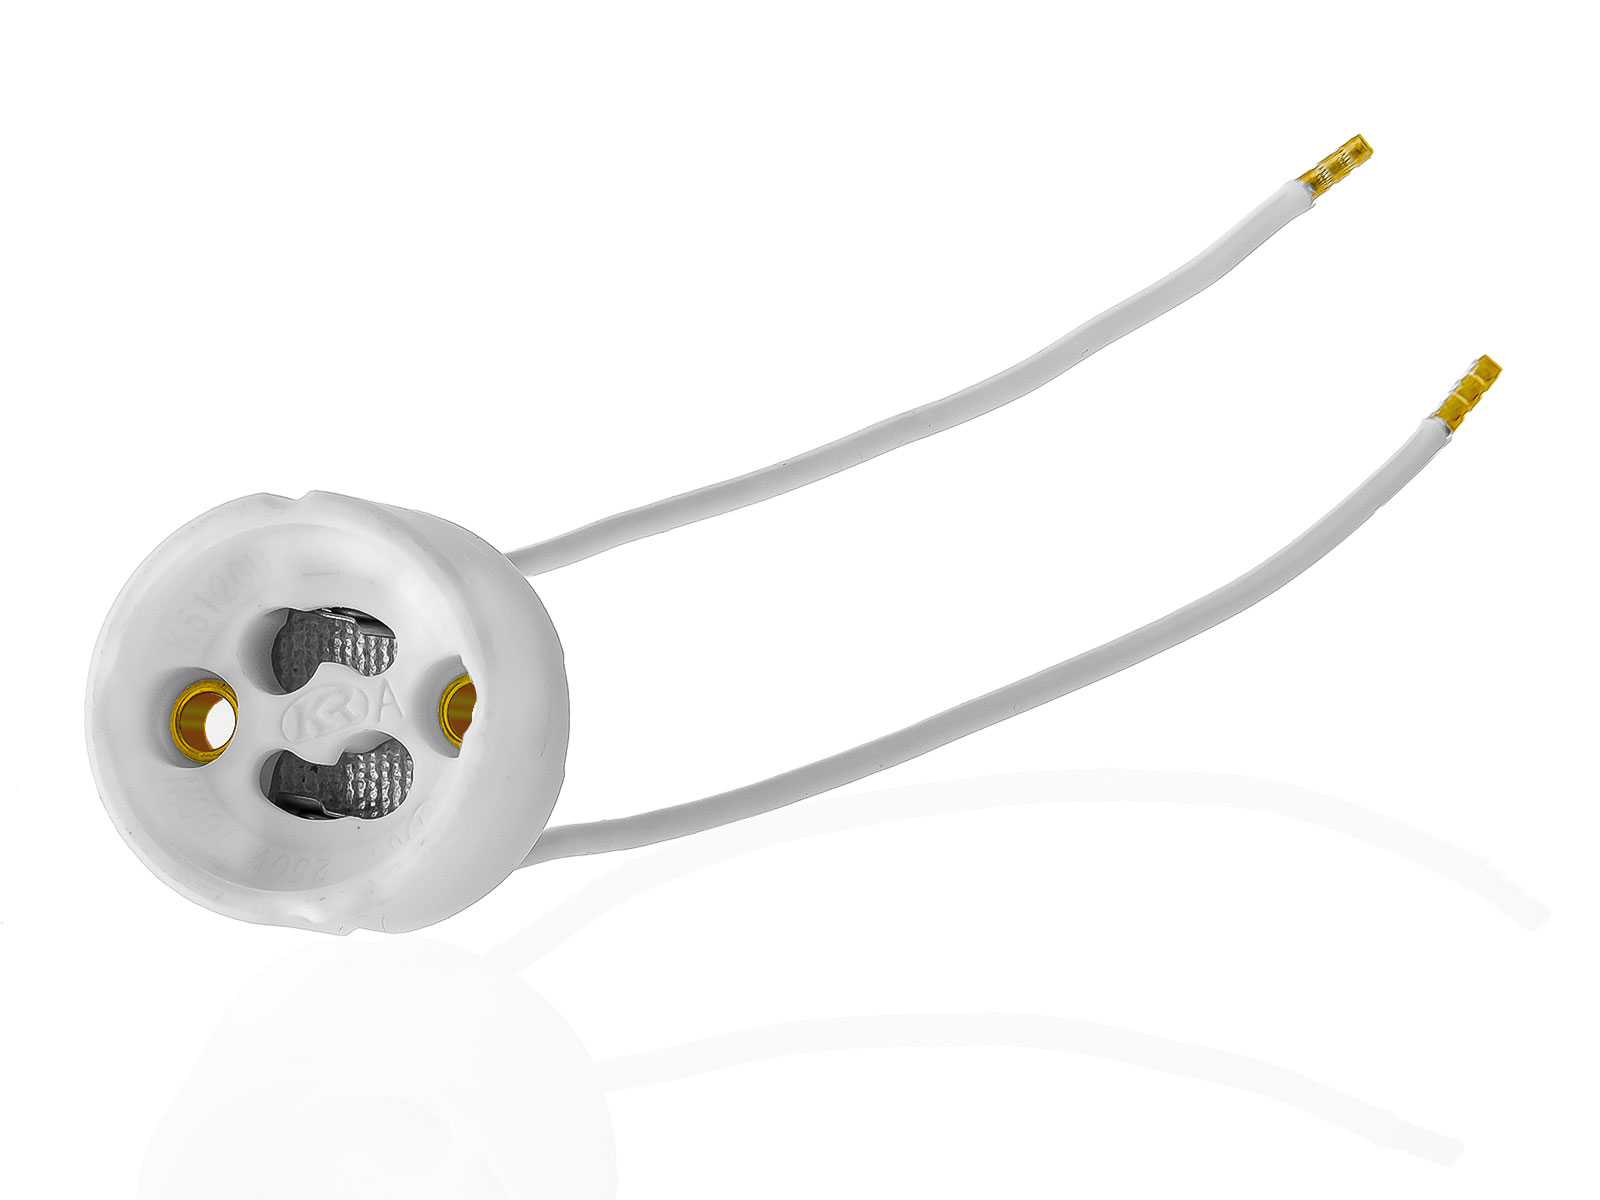 6x GU10 Lampenfassungen Sockel aus Keramik mit Qualitäts Silikonkabel für LED und Halogenleuchtmittel XmediaSat GU10.S6 weiß